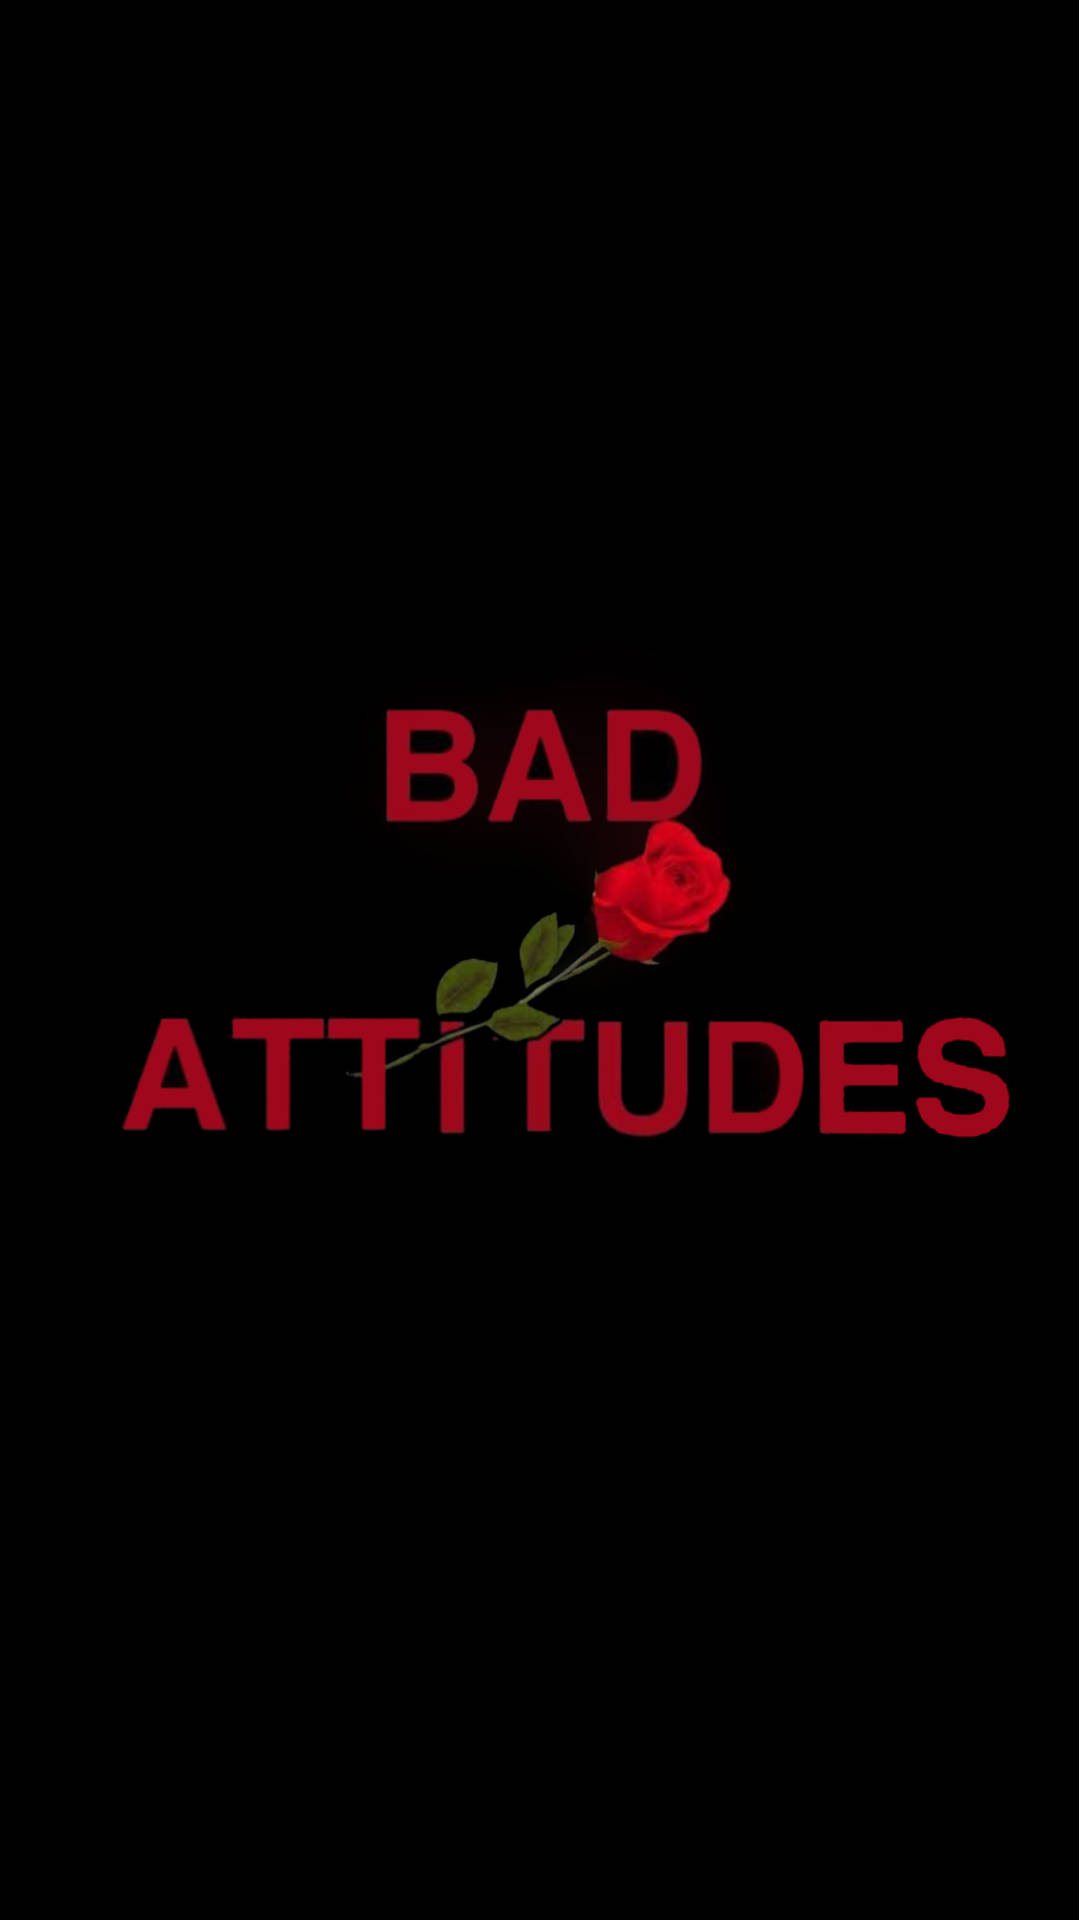 Red Baddie Bad Attitudes Background